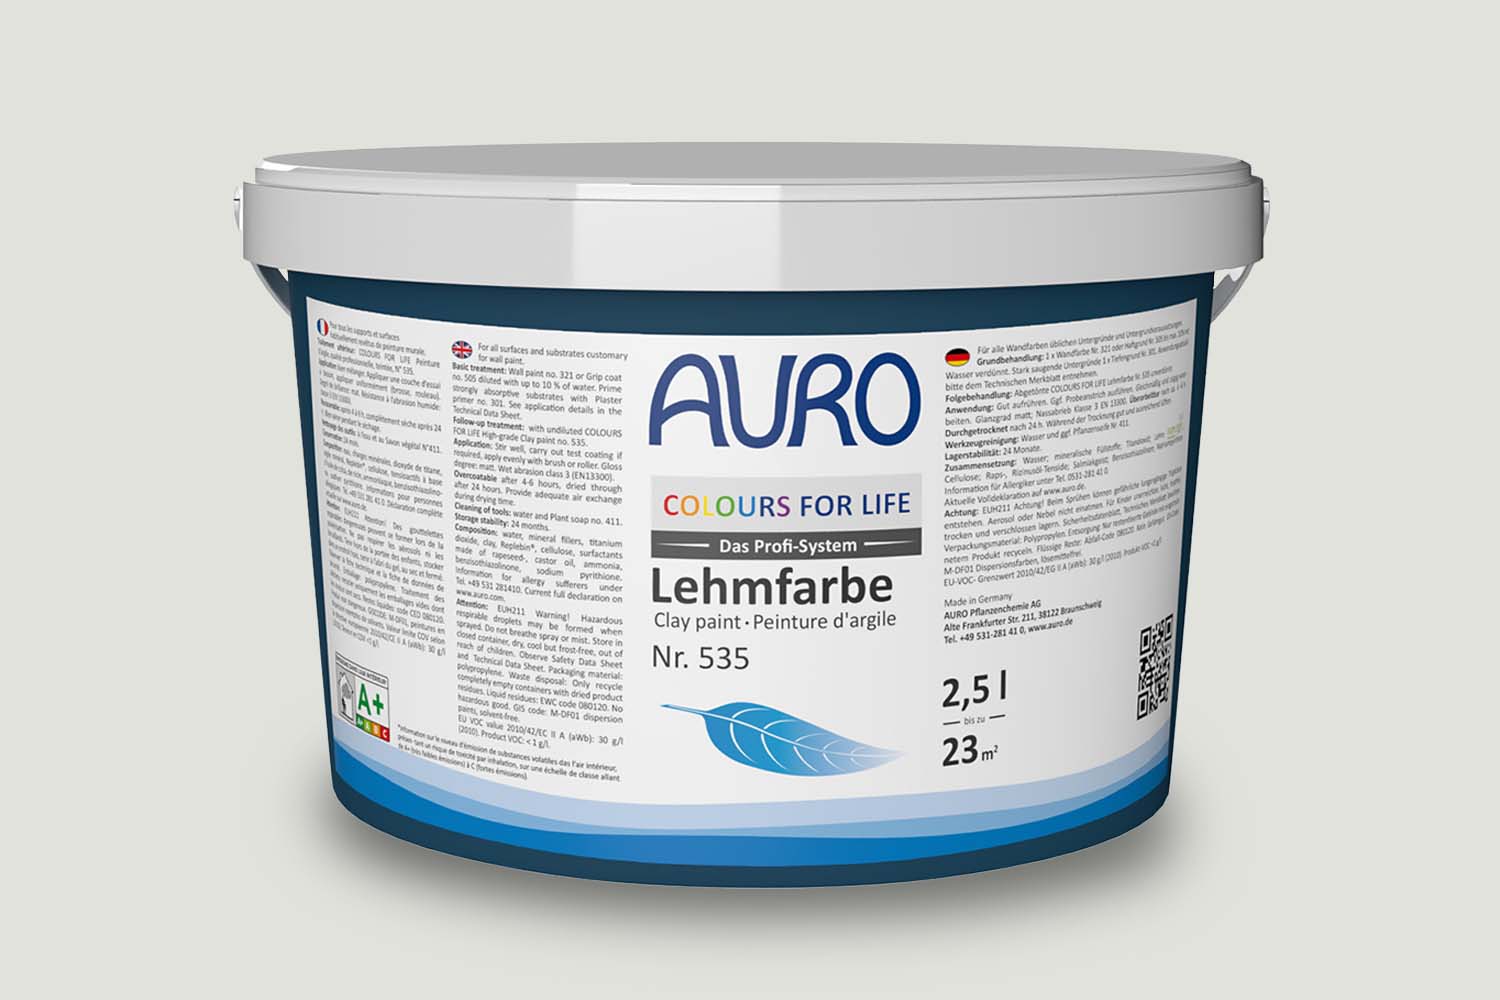 Auro Profi-Lehmfarbe Nr. 535 light taupe Colours For Life